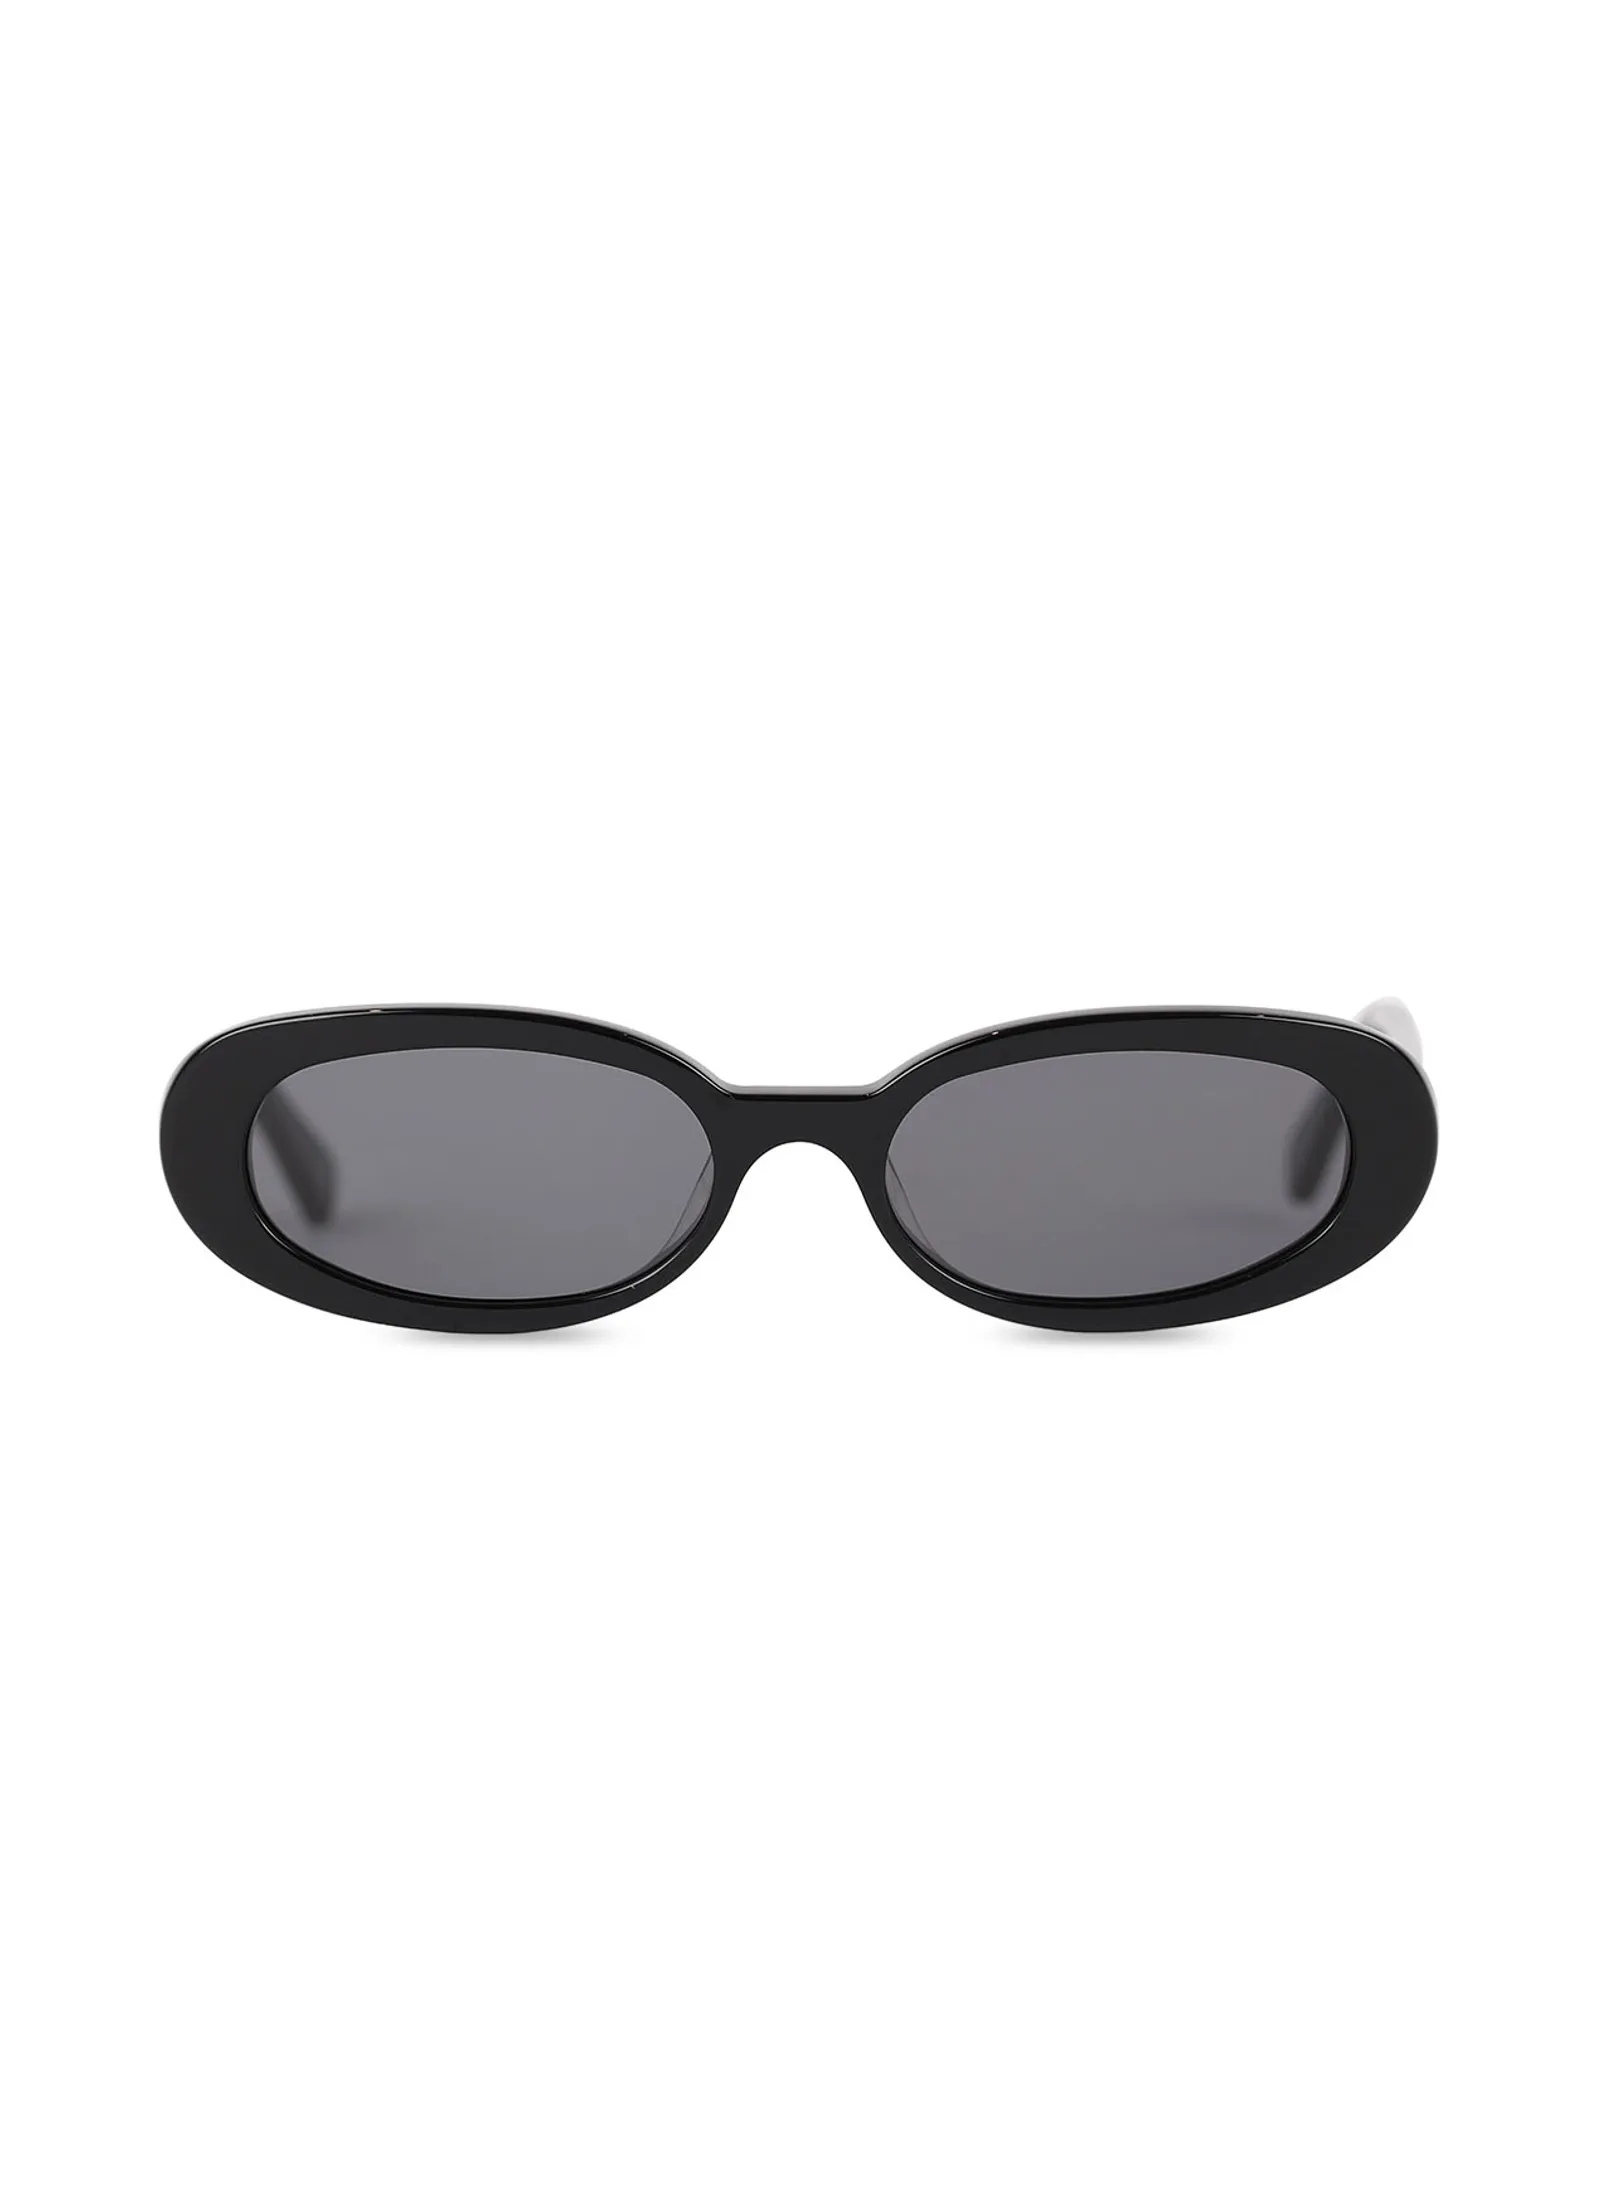 #PopbelaOOTD: Kumpulan Kacamata yang Bisa Buat Gayamu Makin Vintage